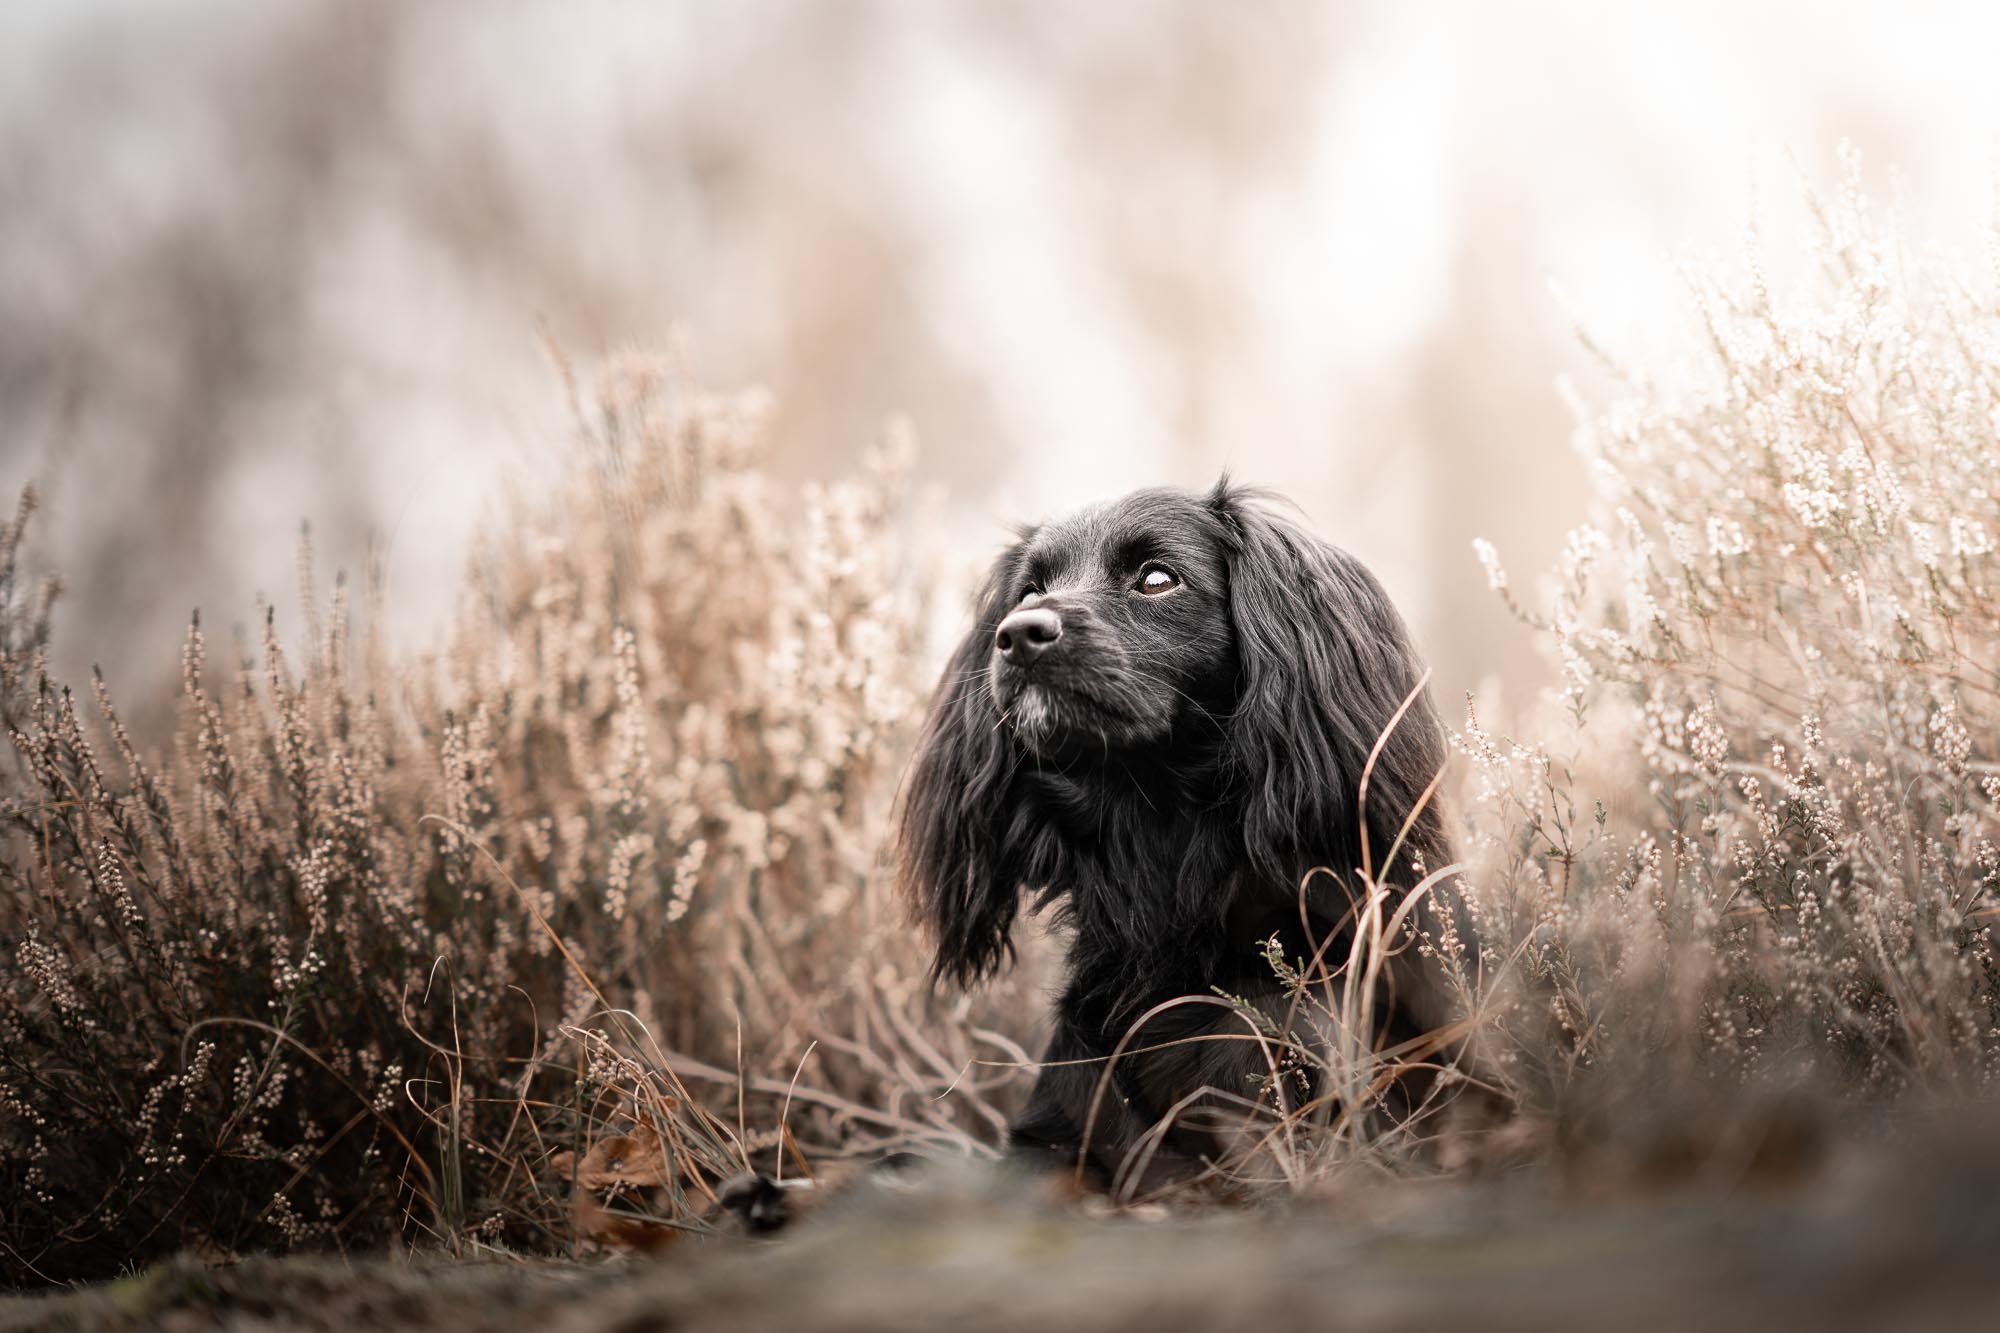 hondenfotoshoot in bergen op zoom
Blog: goedkope fotoshoot is duurkoop